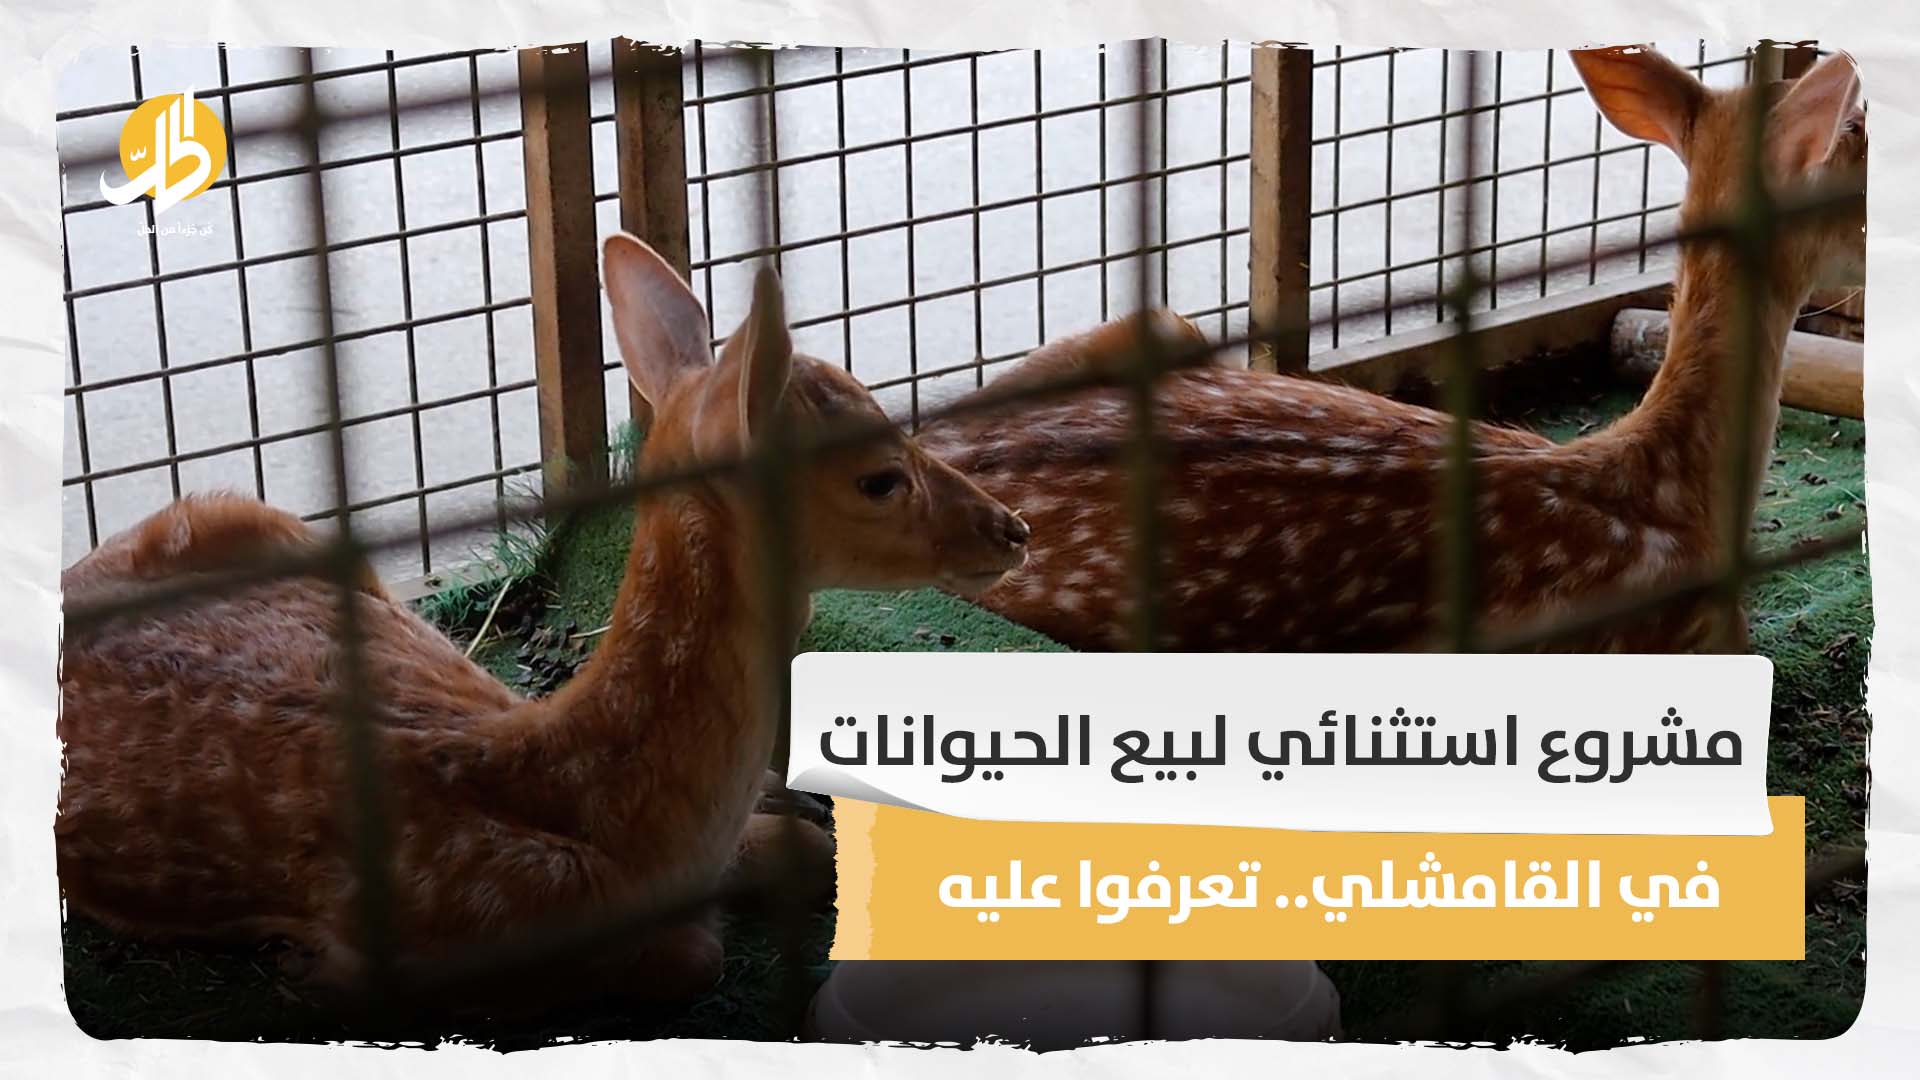 مشروع استثنائي لبيع الحيوانات في القامشلي.. تعرفوا عليه